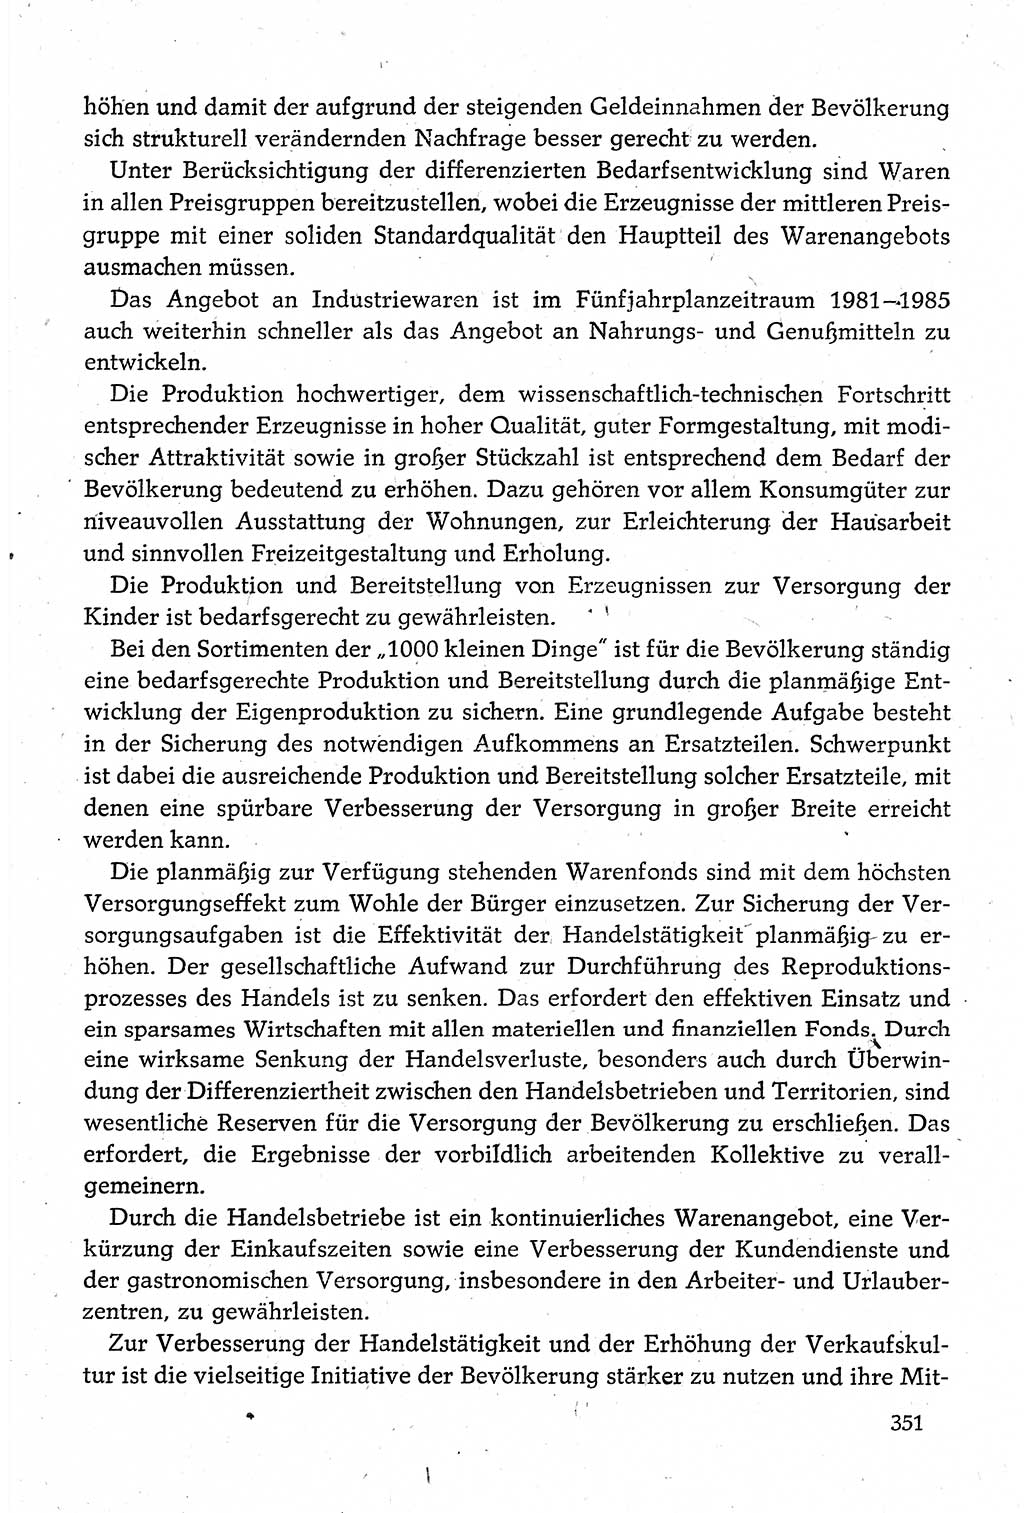 Dokumente der Sozialistischen Einheitspartei Deutschlands (SED) [Deutsche Demokratische Republik (DDR)] 1980-1981, Seite 351 (Dok. SED DDR 1980-1981, S. 351)